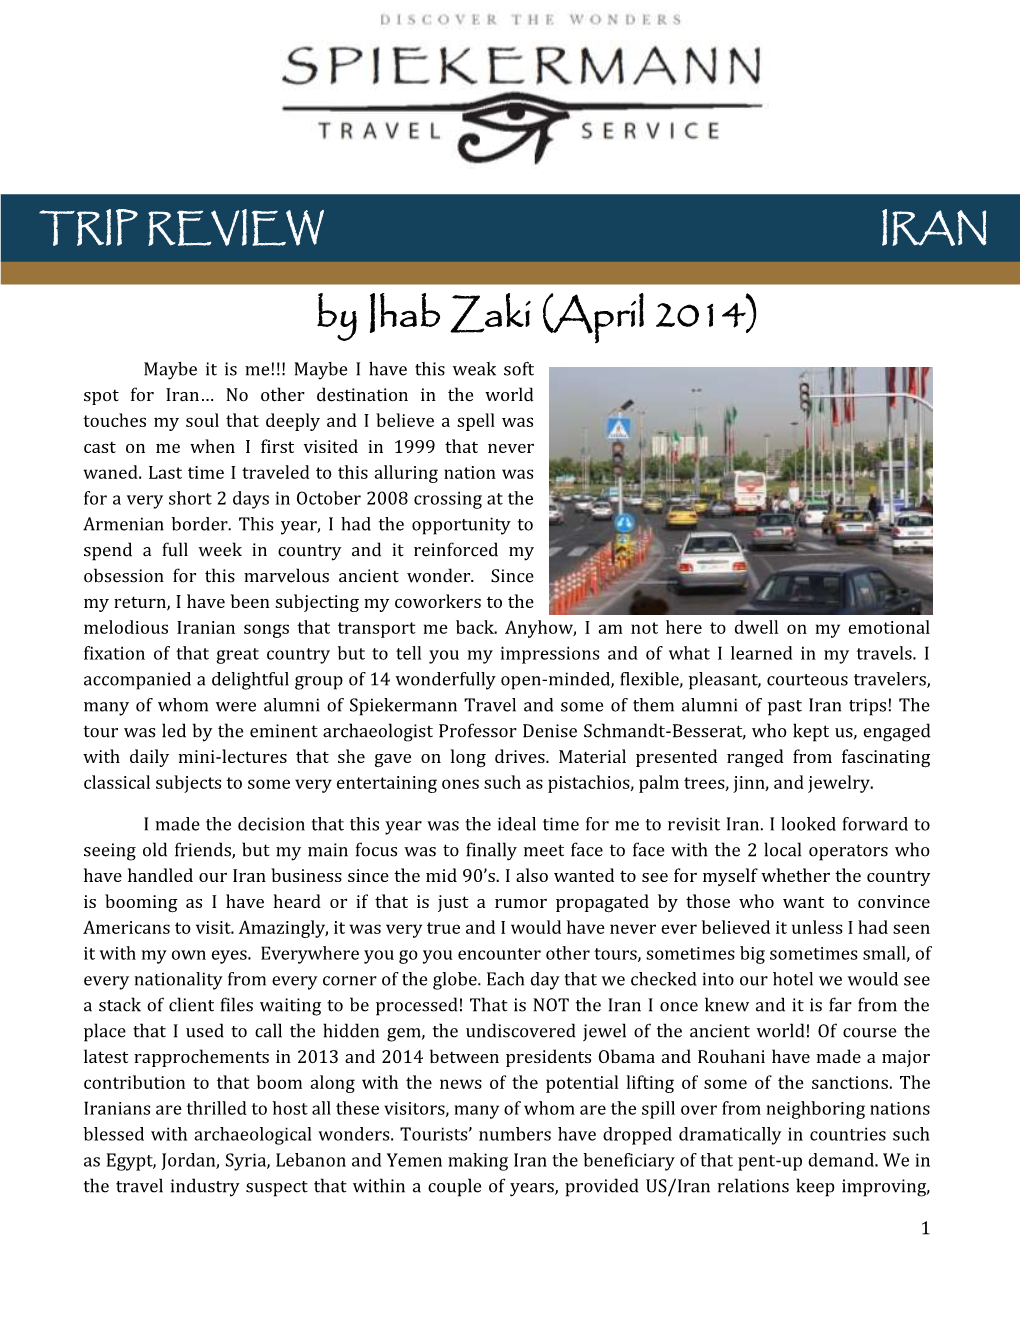 Trip Review Iran